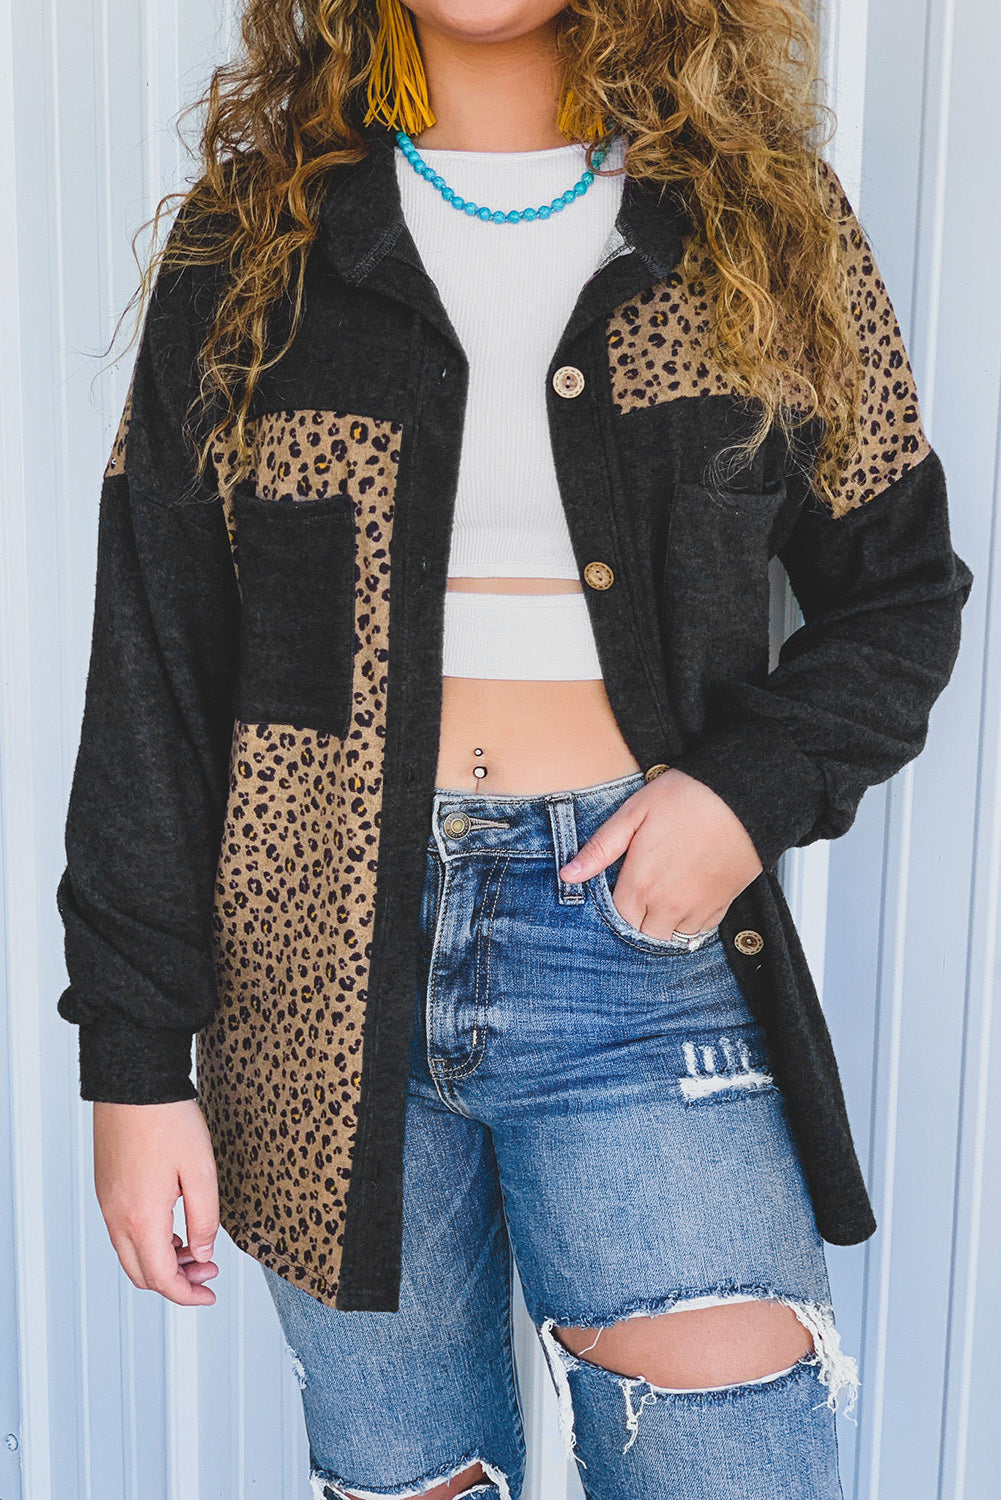 Crna jakna s uzorkom leoparda